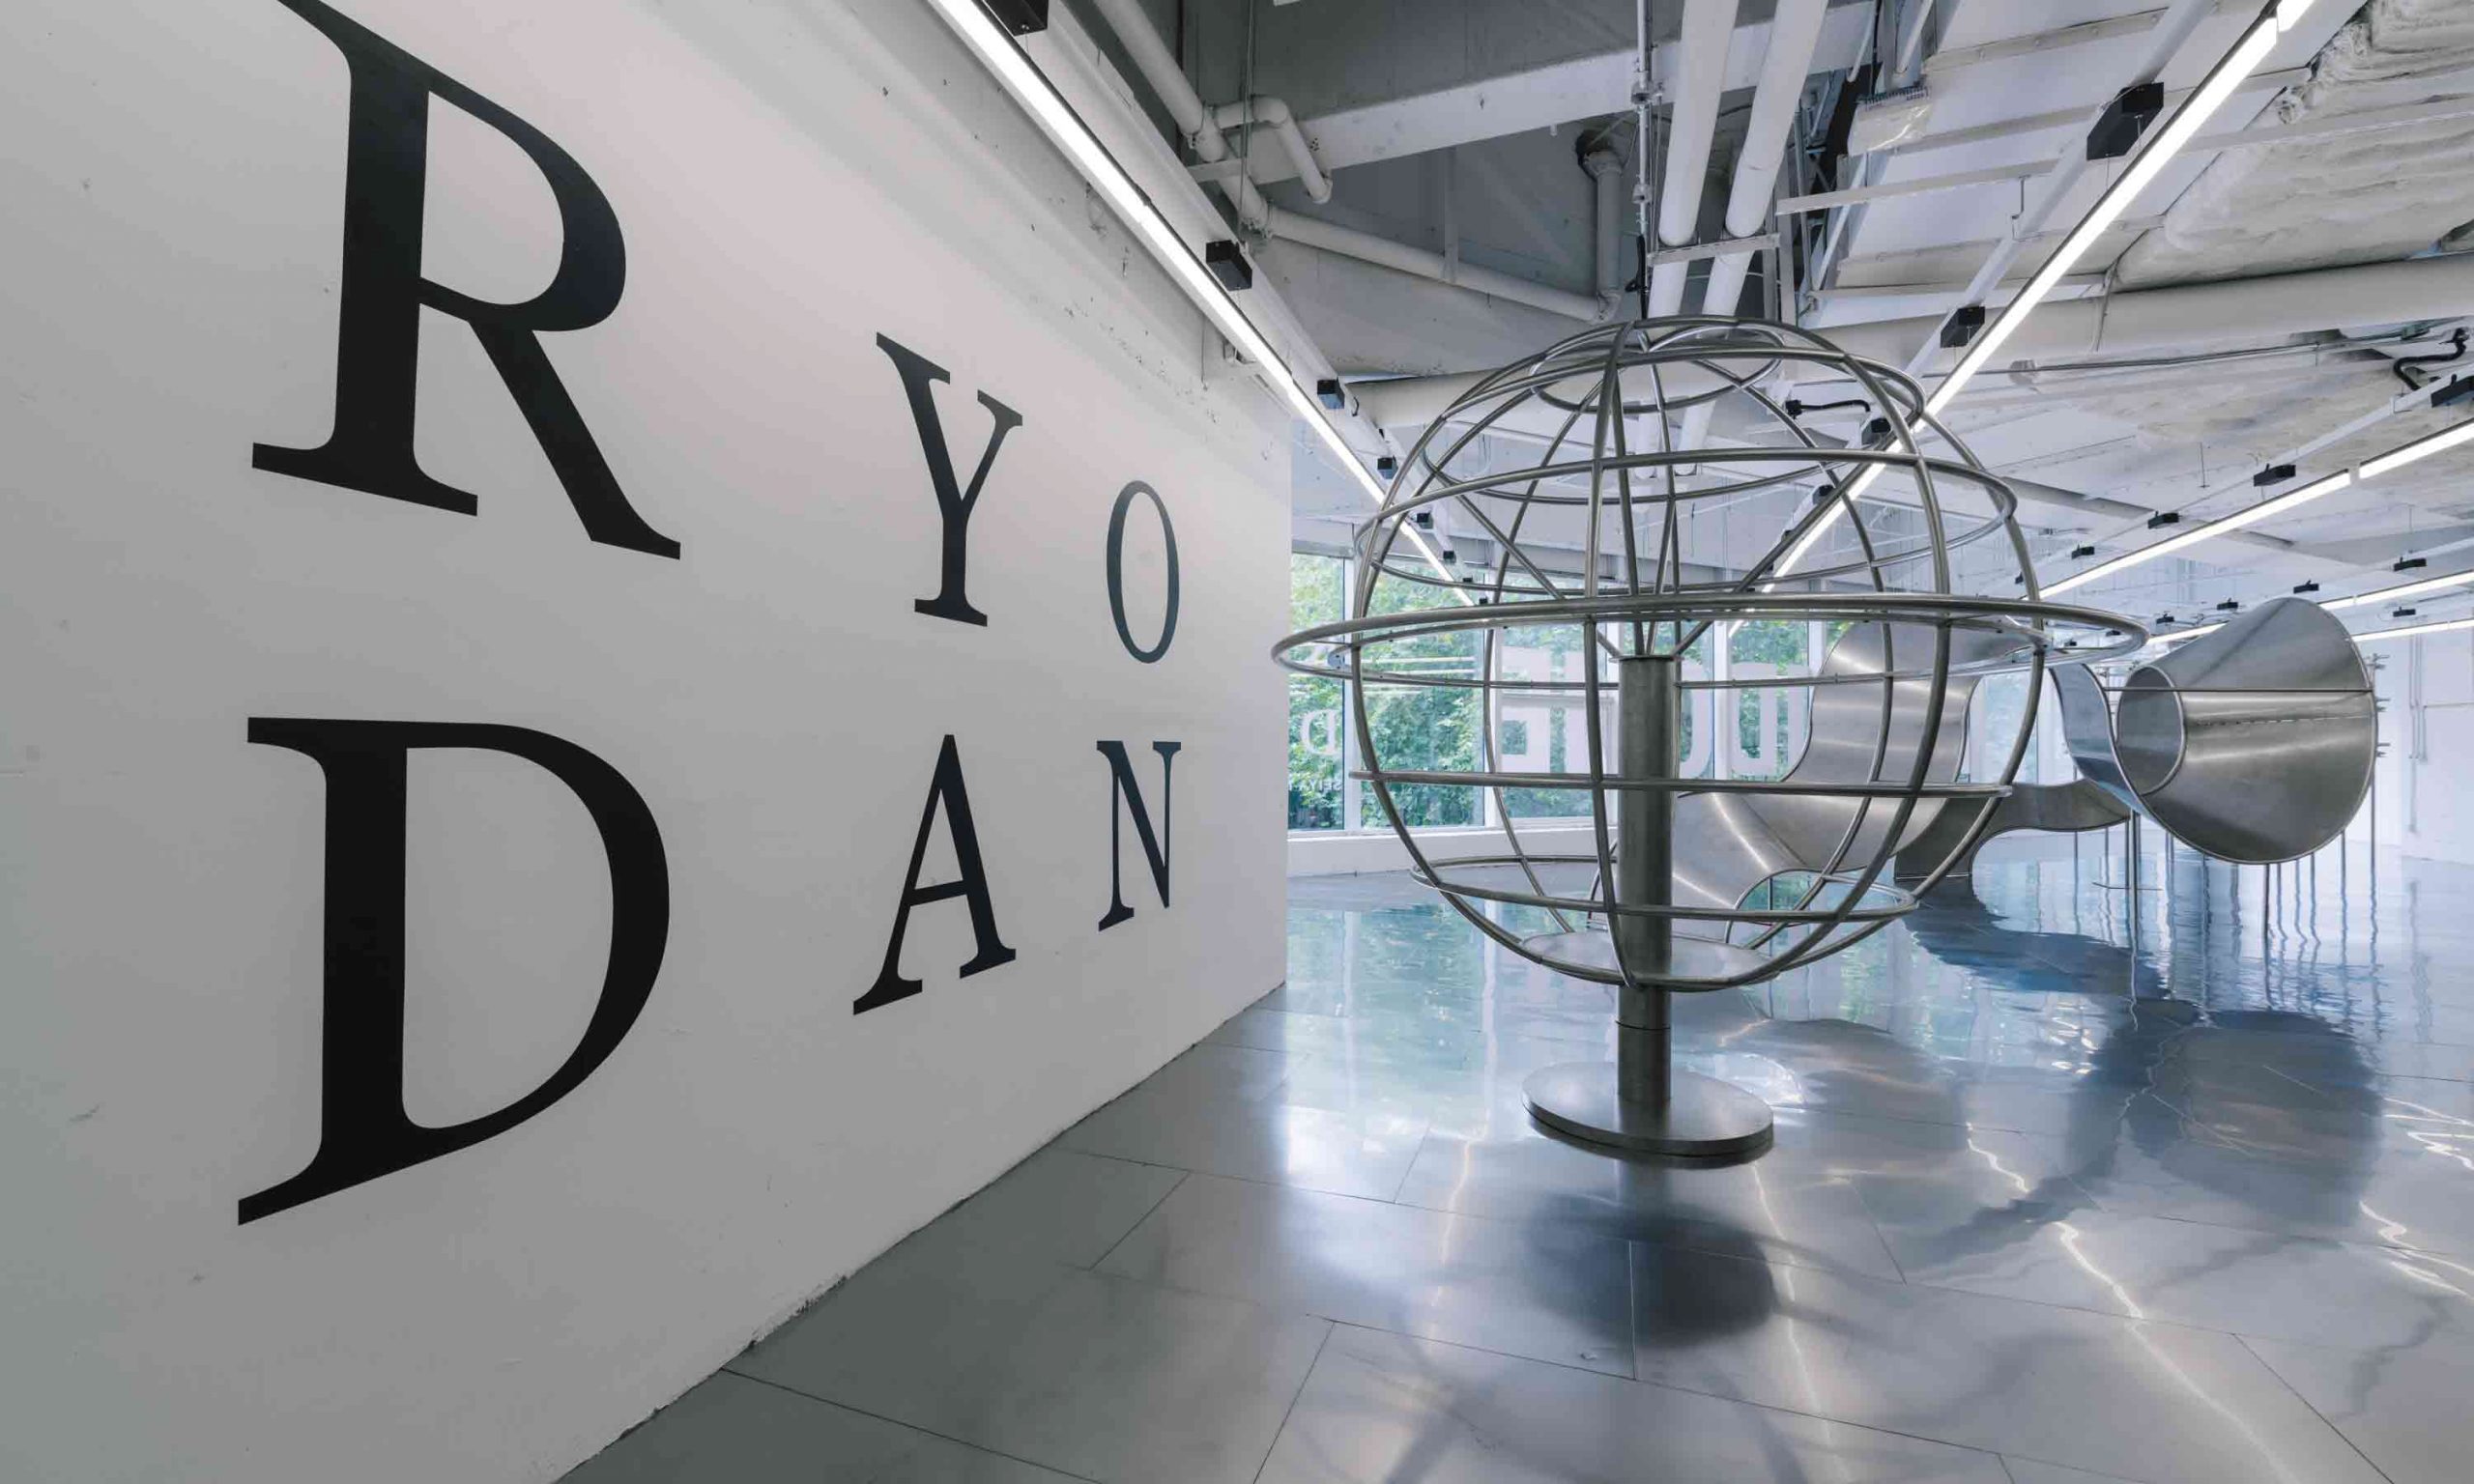 国际创意平台 RYODAN by Seiya Nakamura 2.24 携手 WE11DONE、Feng Chen Wang 于 TX 淮海呈现创意乐园